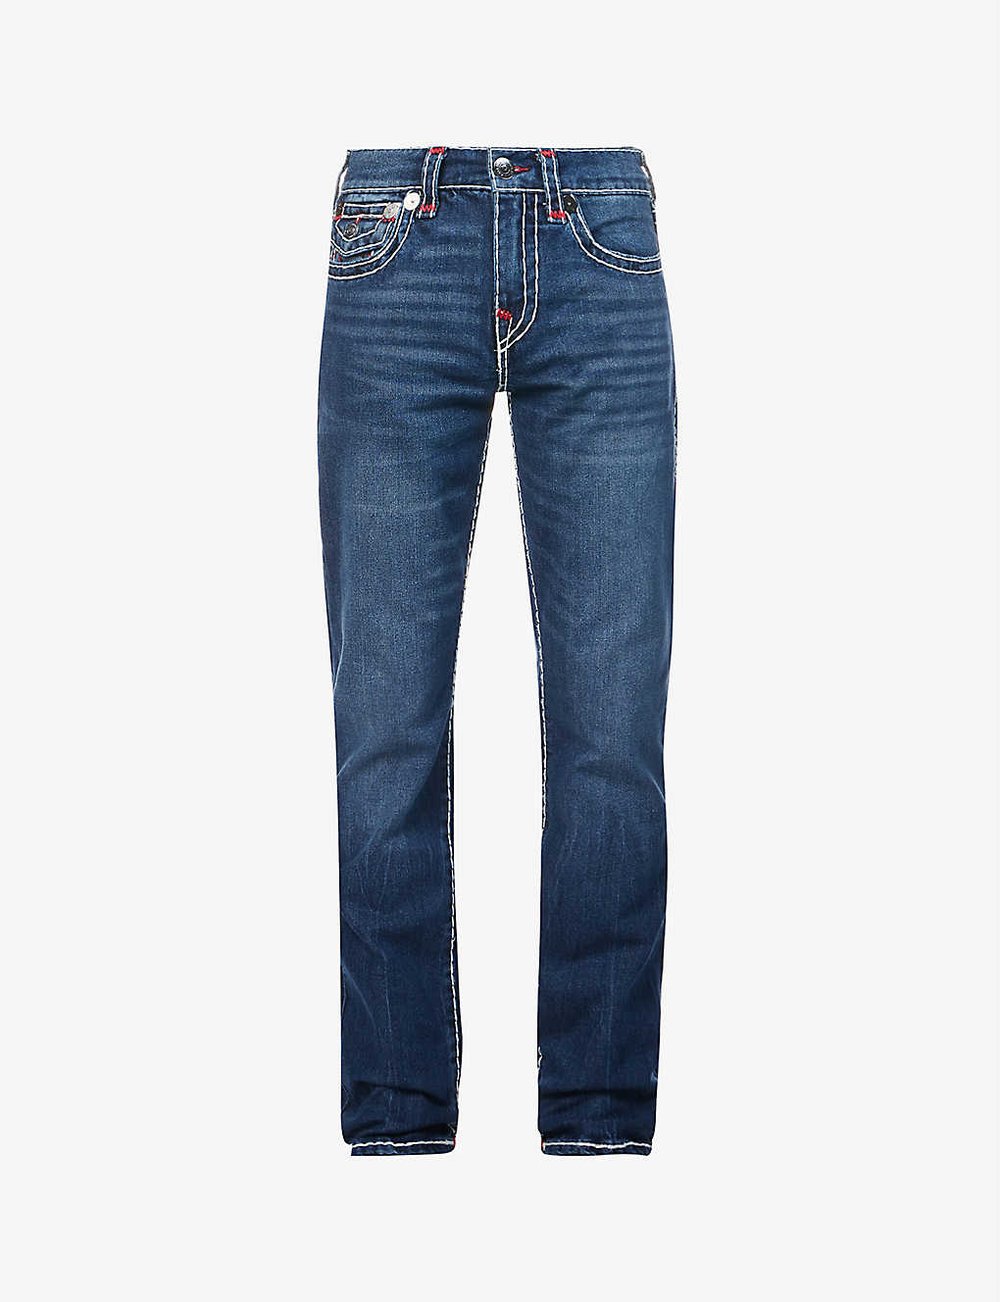 Stonewashed denim jeans, True Religion, £250